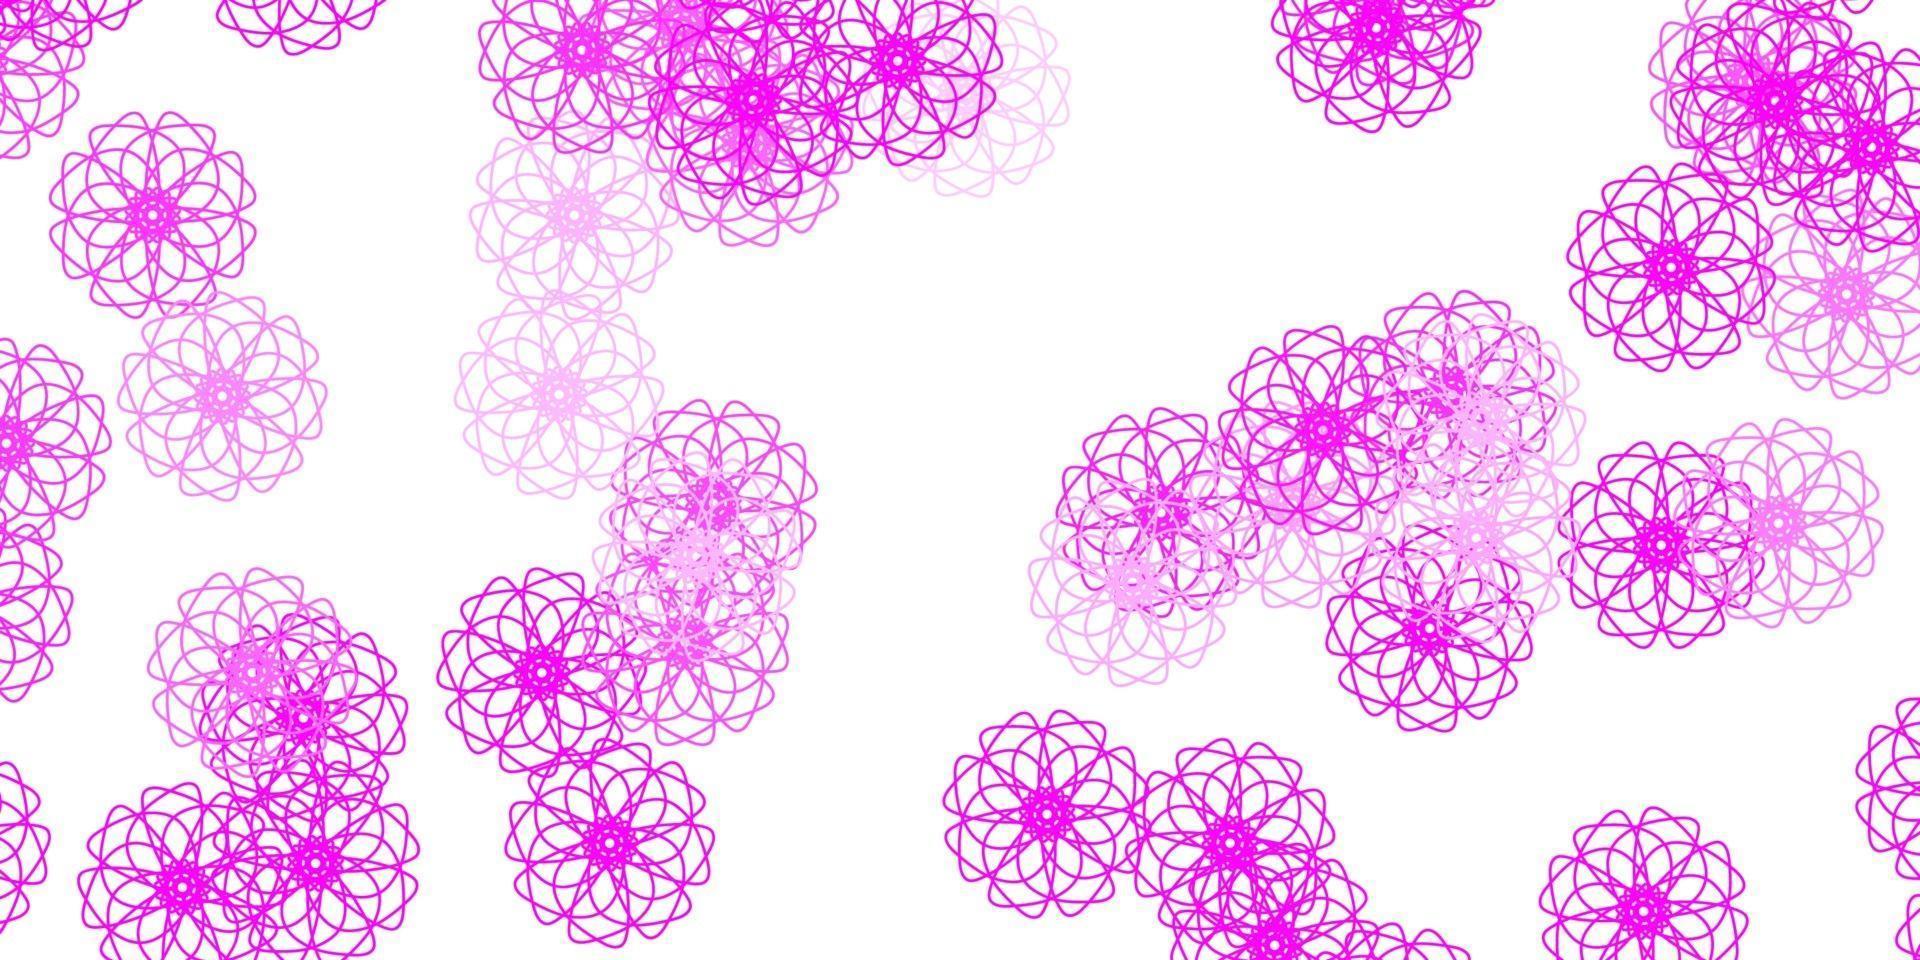 padrão de doodle de vetor rosa claro com flores.